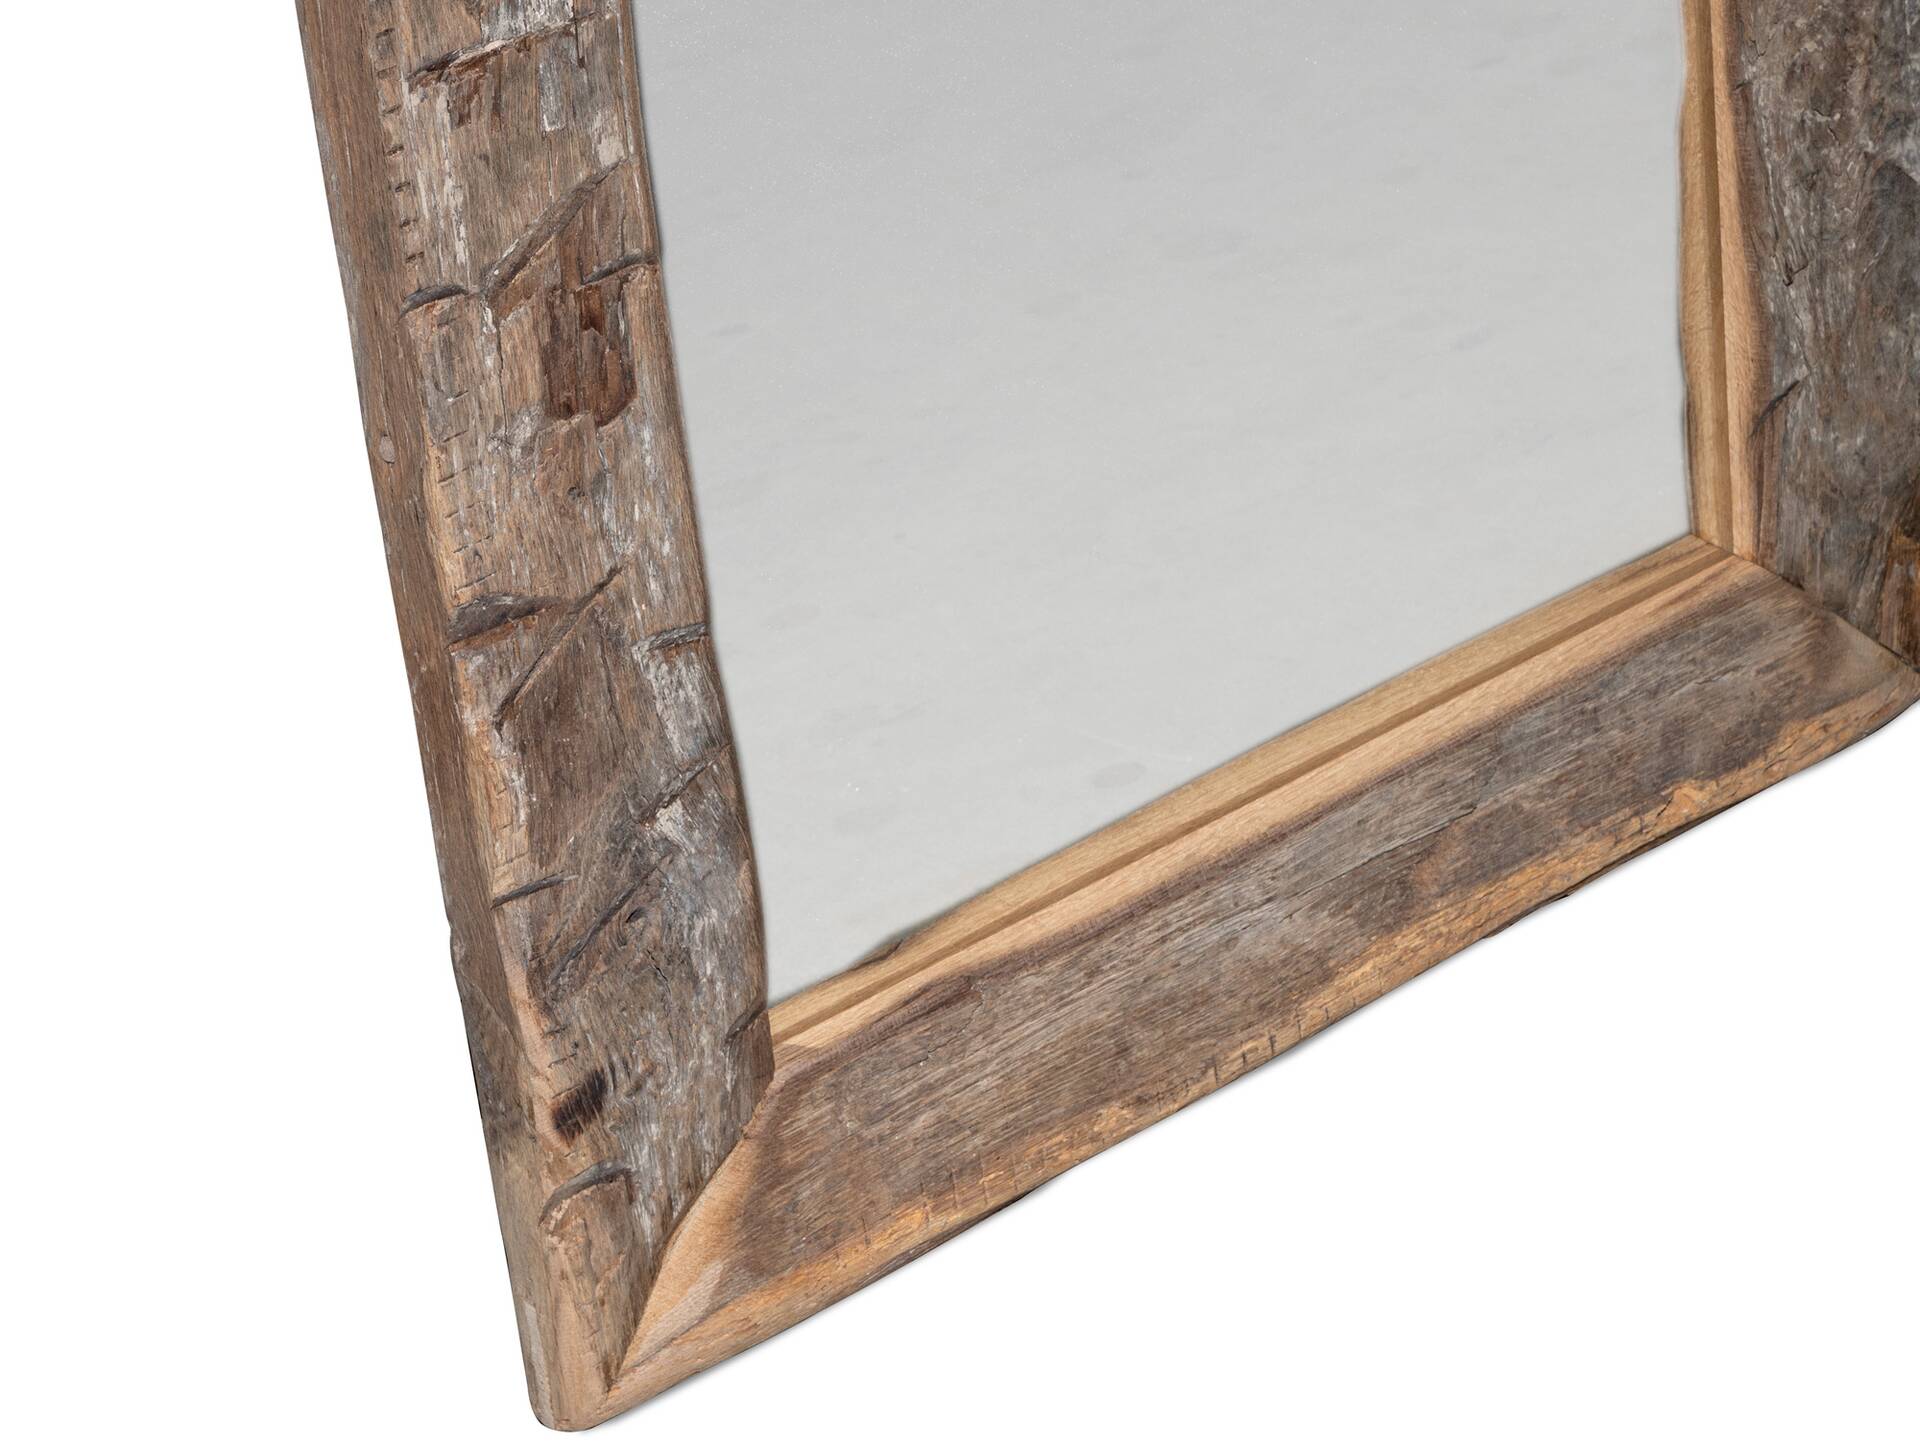 Eiche-Altholz Spiegel 180x60 cm, Material Massivholz 